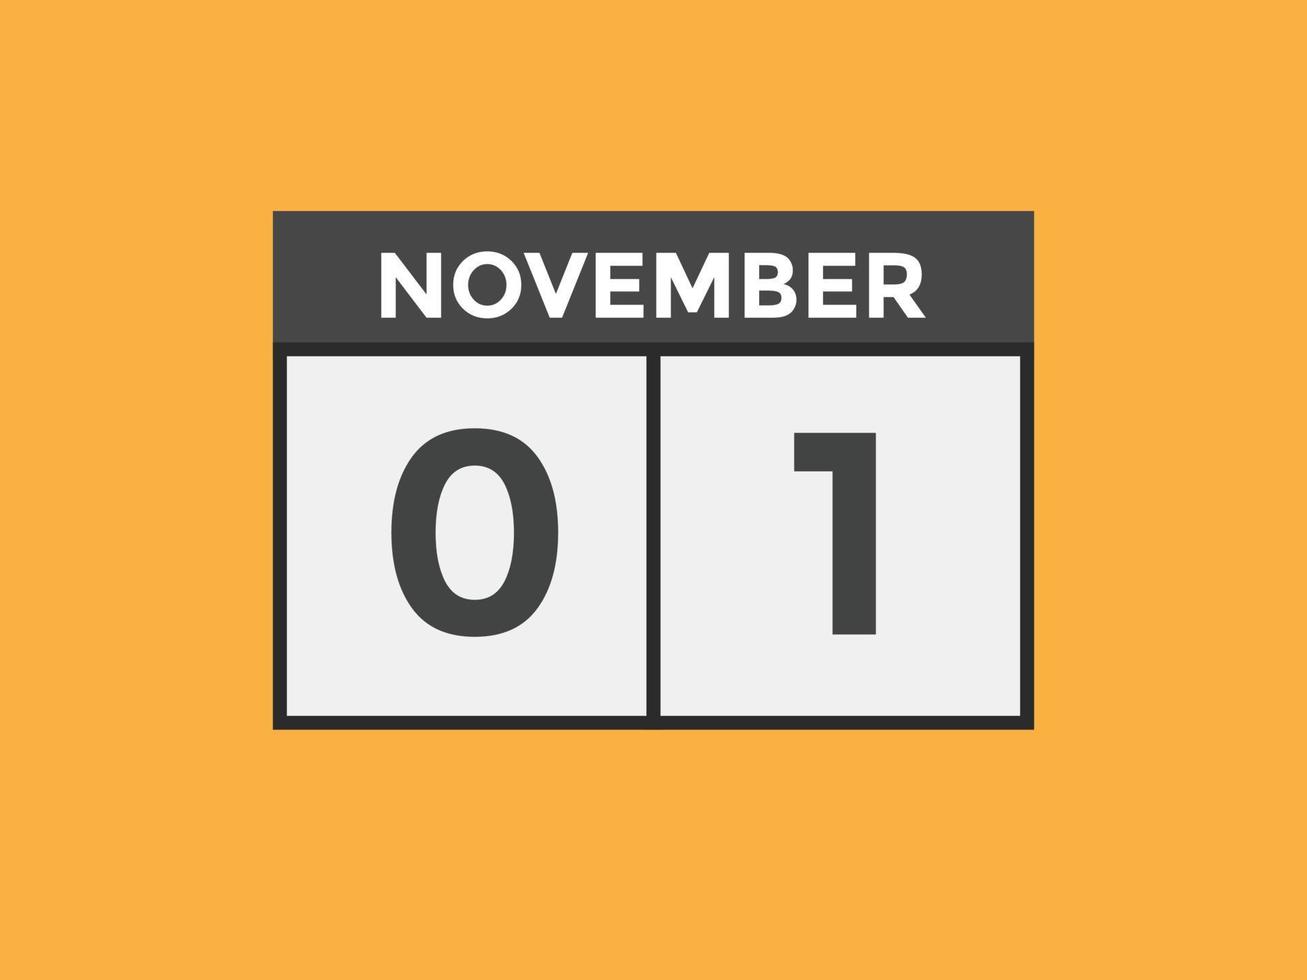 novembre 1 calendario promemoria. 1 ° novembre quotidiano calendario icona modello. calendario 1 ° novembre icona design modello. vettore illustrazione